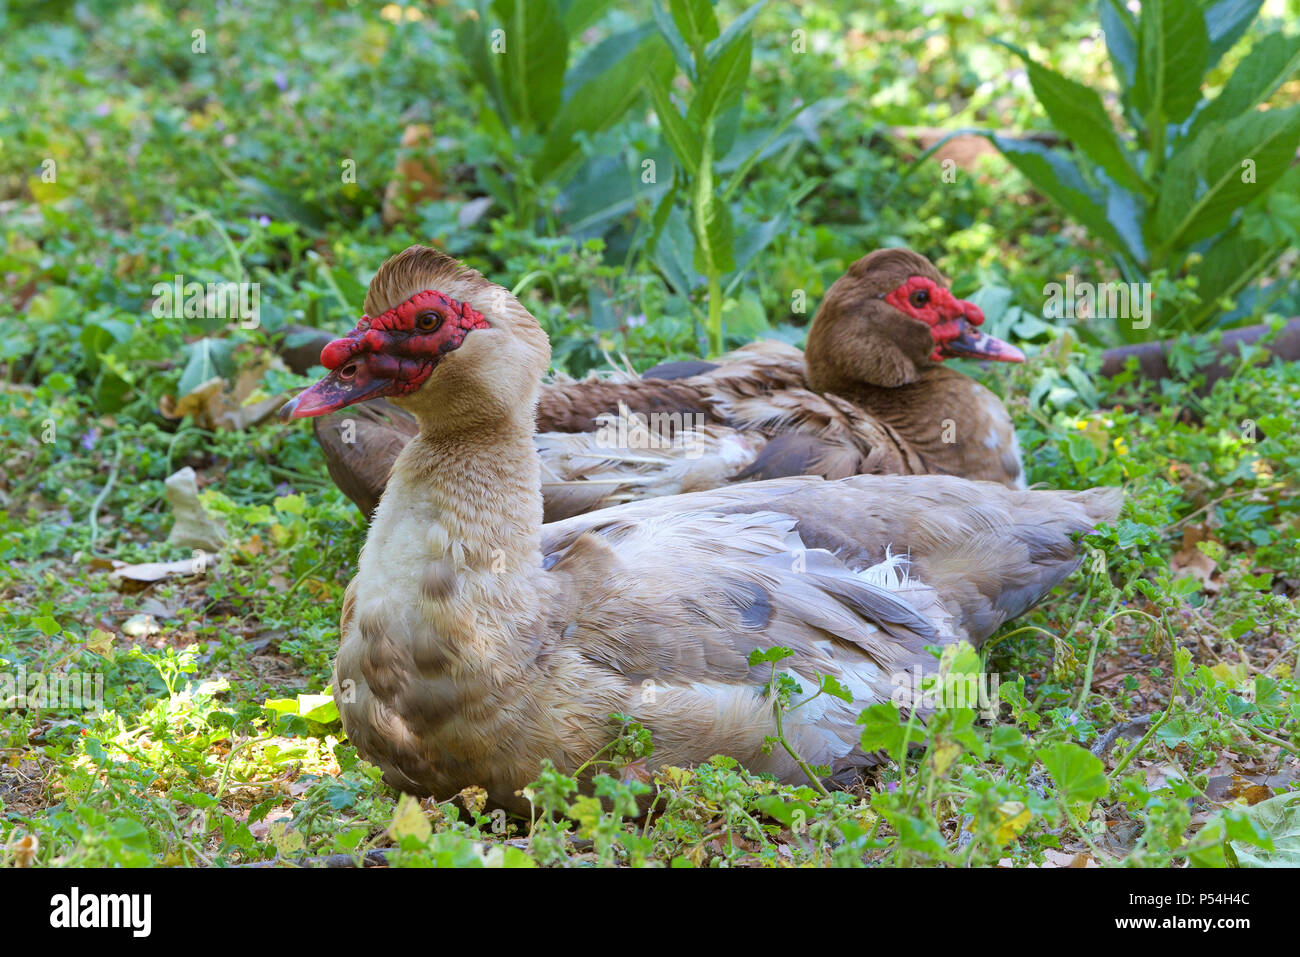 Los dos patos reales (Cairina moschata) apoyado en el verde follaje. Las razas domésticas, Cairina moschata domestica, es comúnmente conocido en español como el Foto de stock